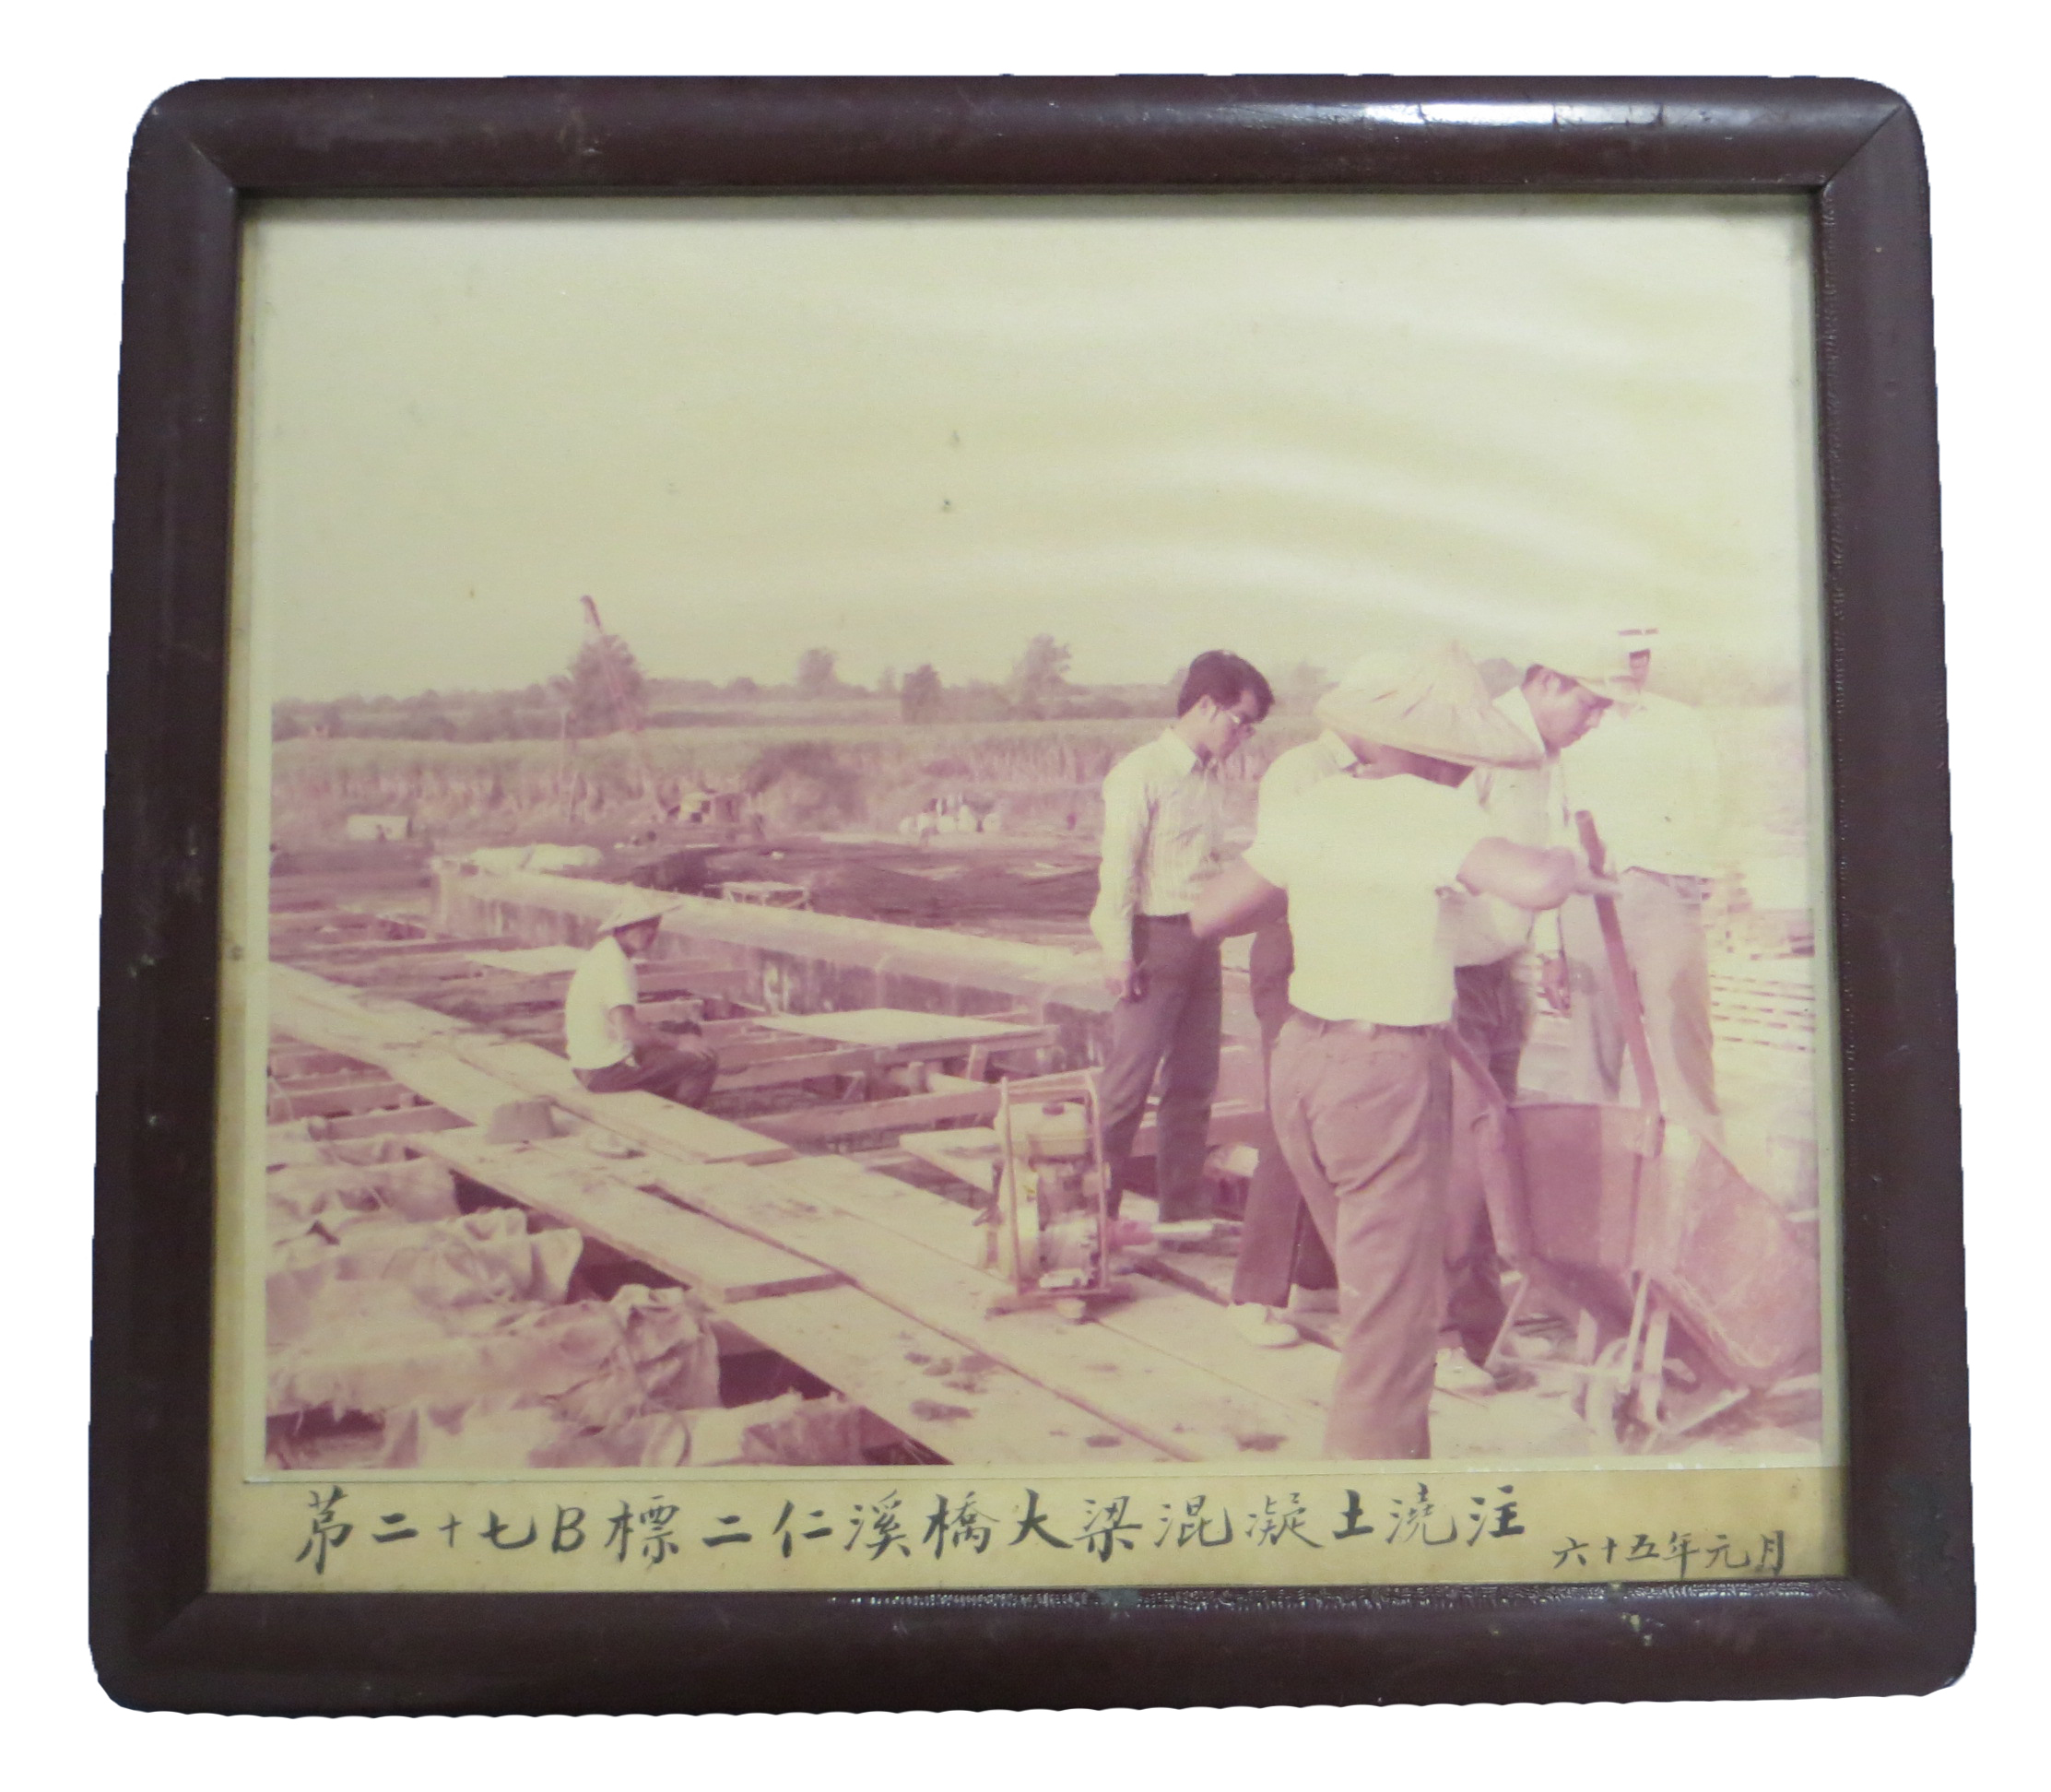 65年27標二仁溪橋大樑混凝土澆注施工照片及相框